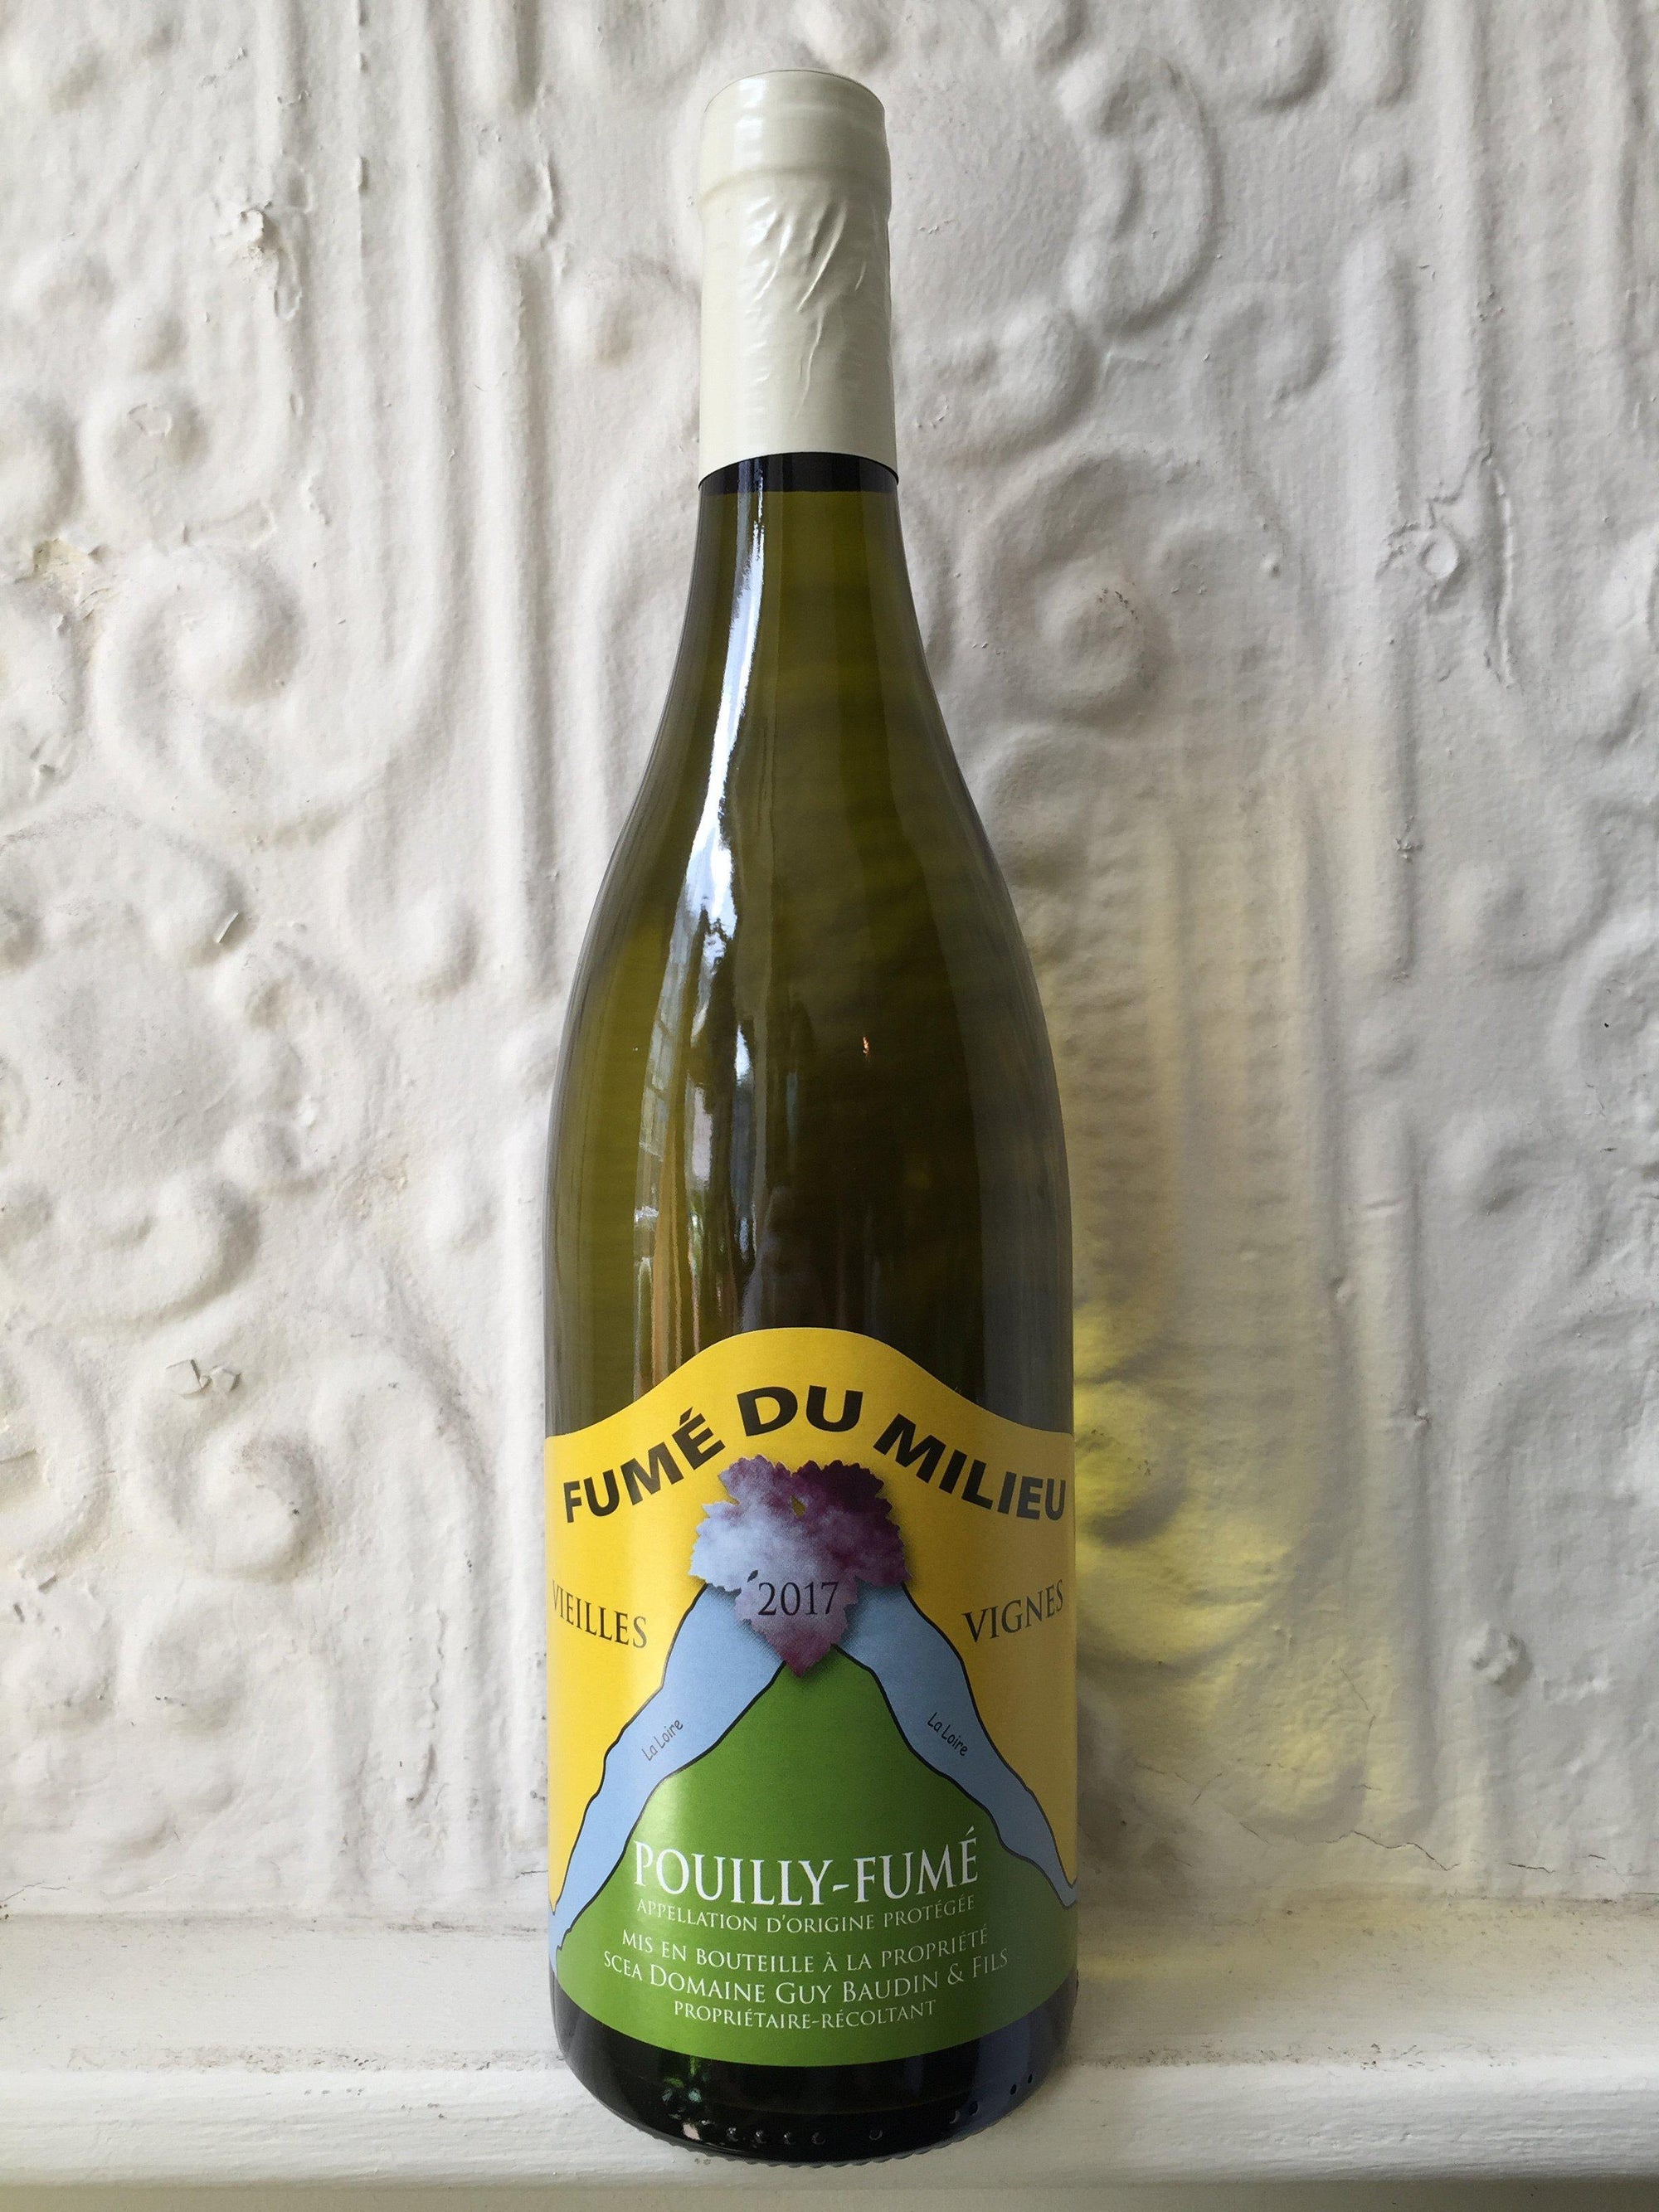 Pouilly-Fume du Milieu Vielles Vignes, Guy Baudin 2017 (Loire, France)-Wine-Bibber & Bell